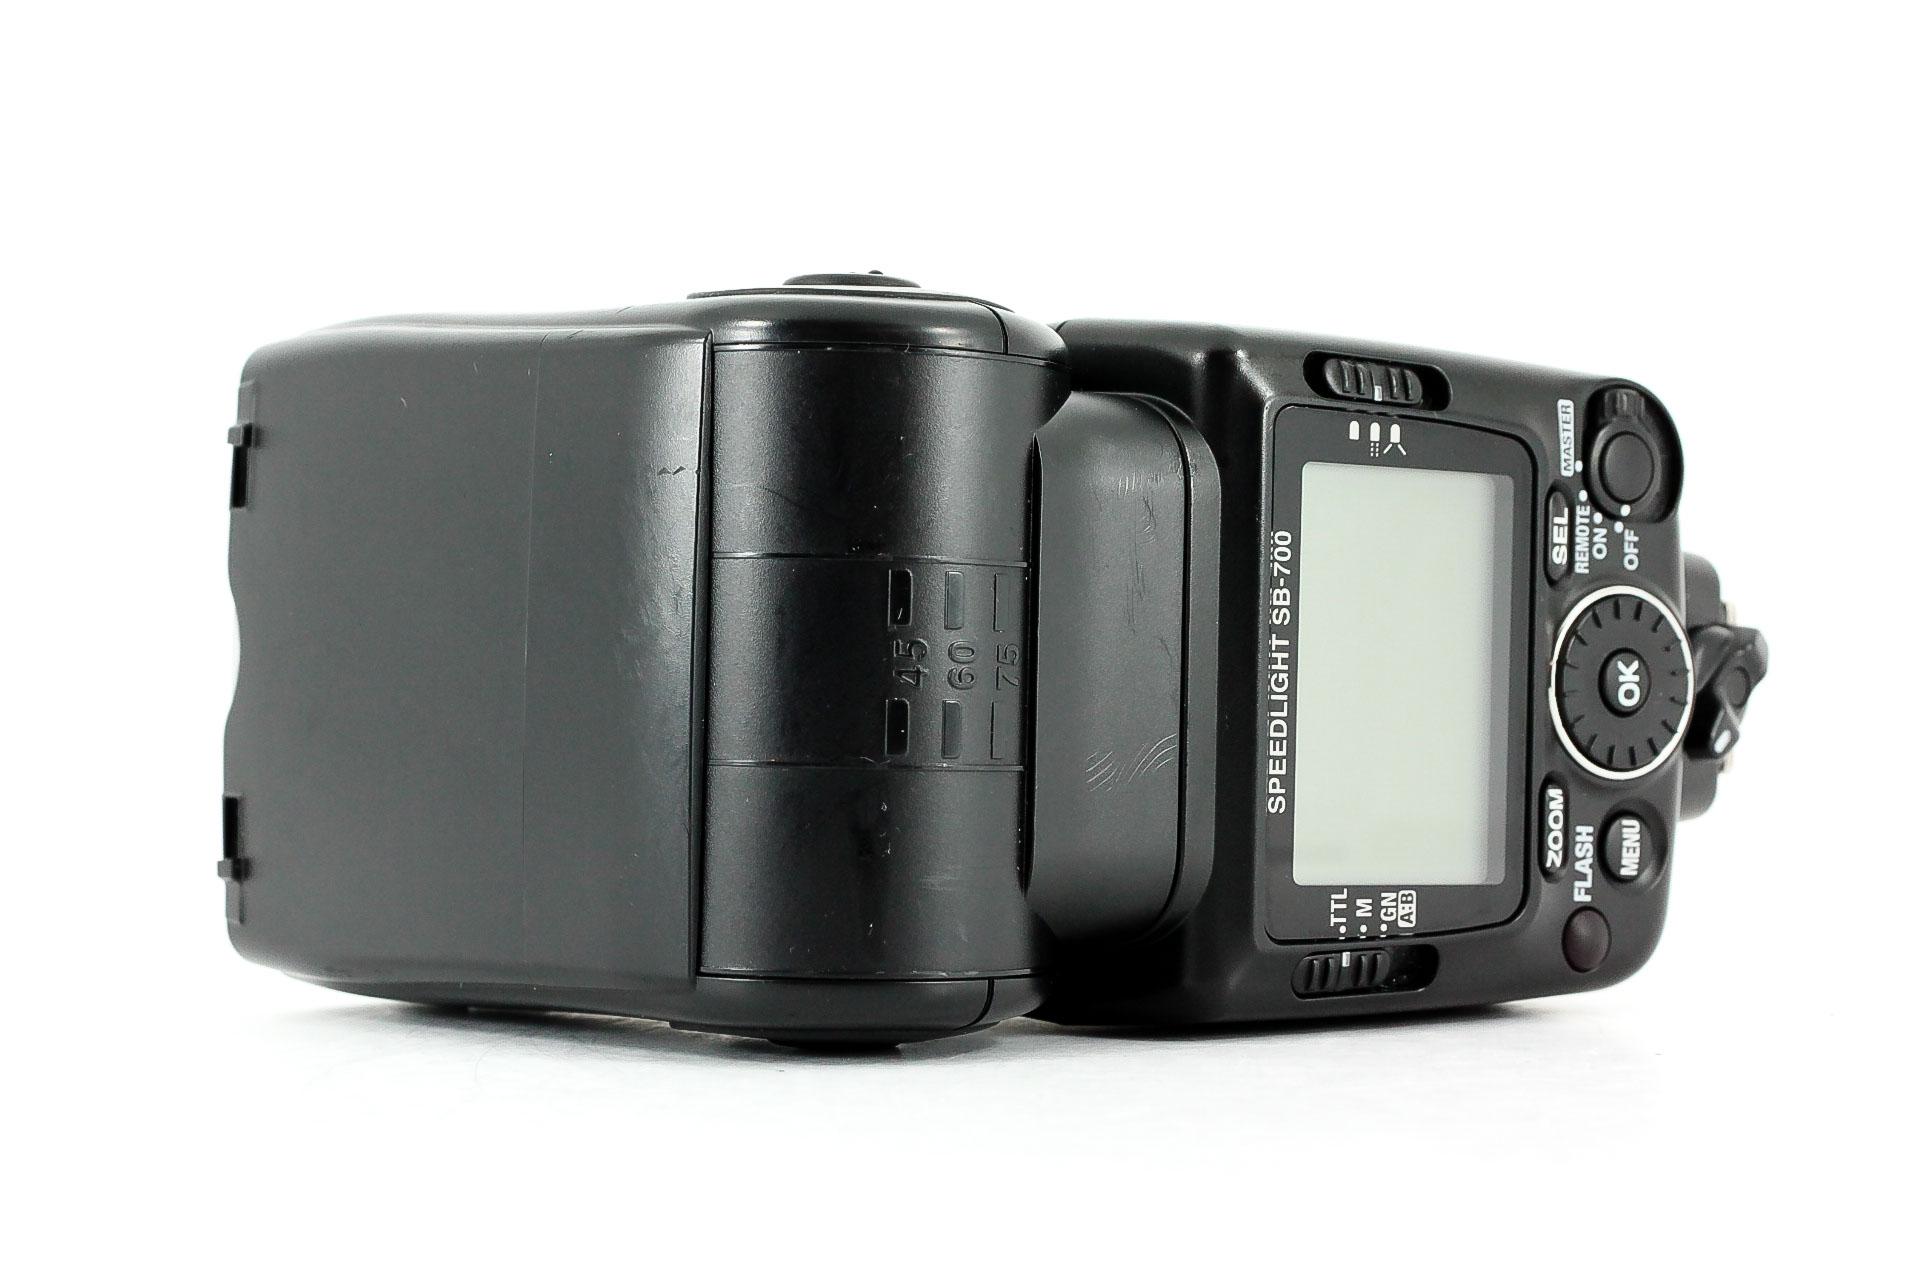 Nikon SB-700 Speedlight Flash Unit Flashgun - Lenses and Cameras